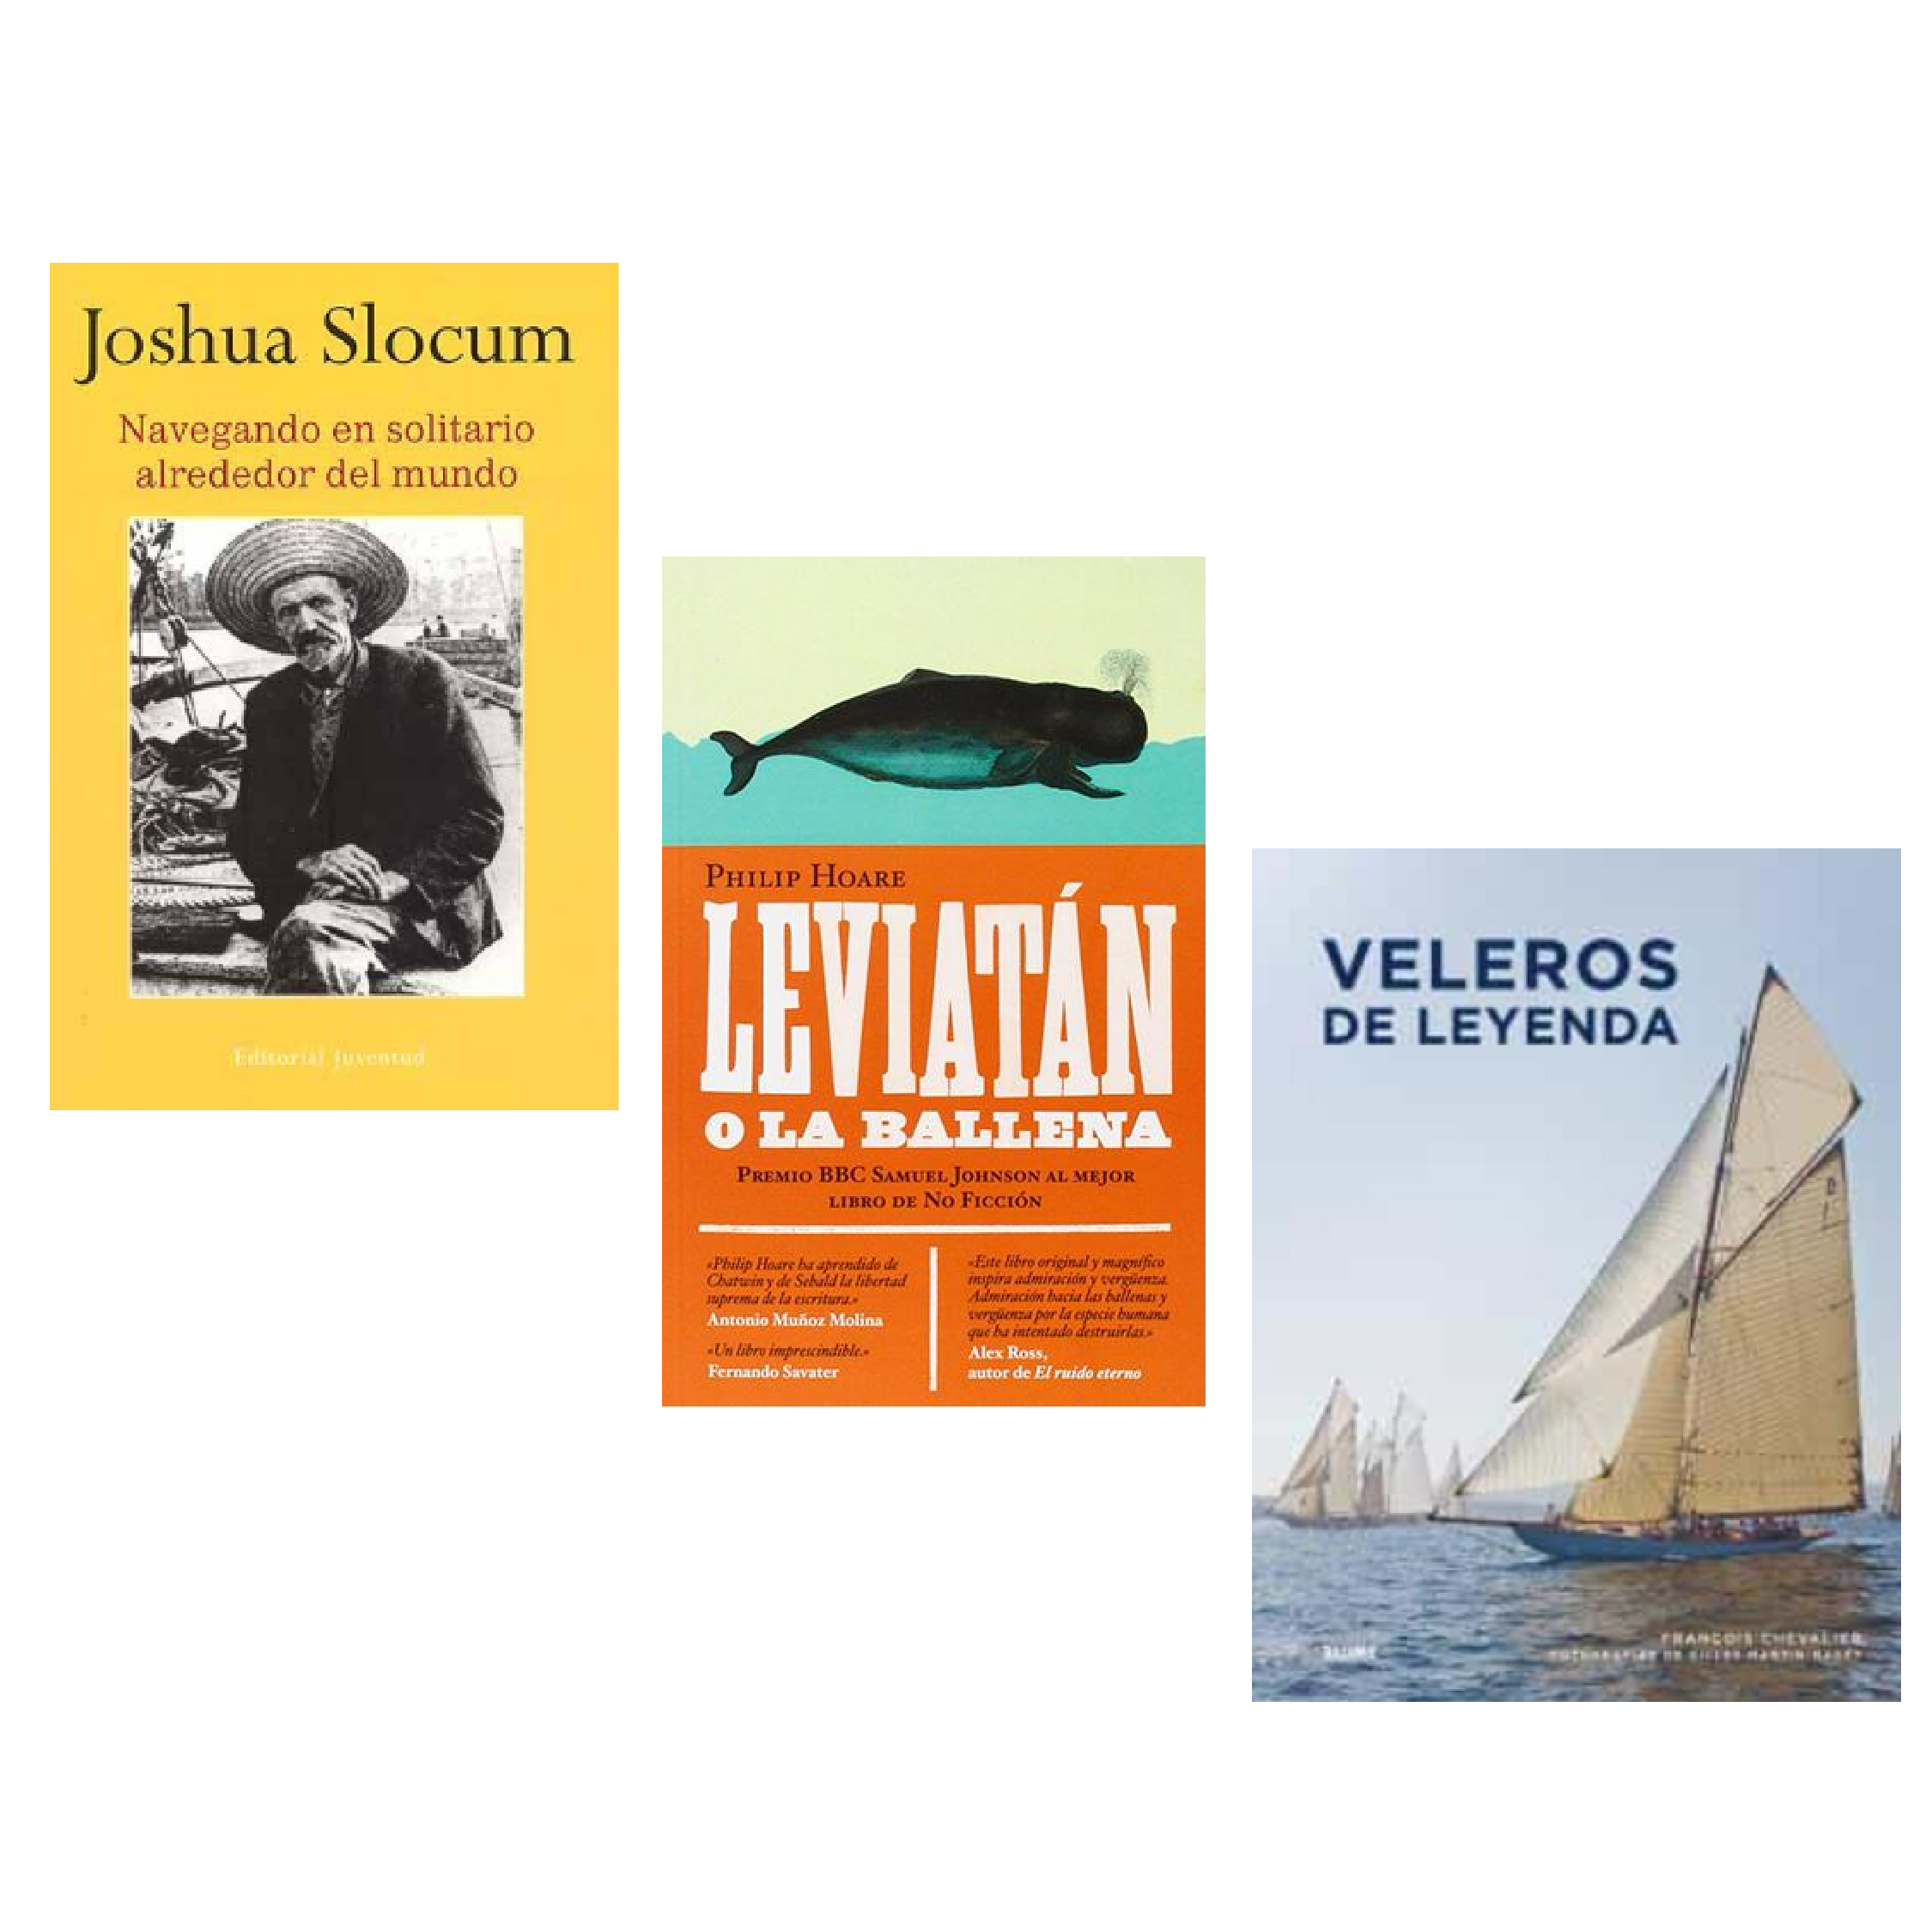 Recomanacions llibres nautics per sant jordi